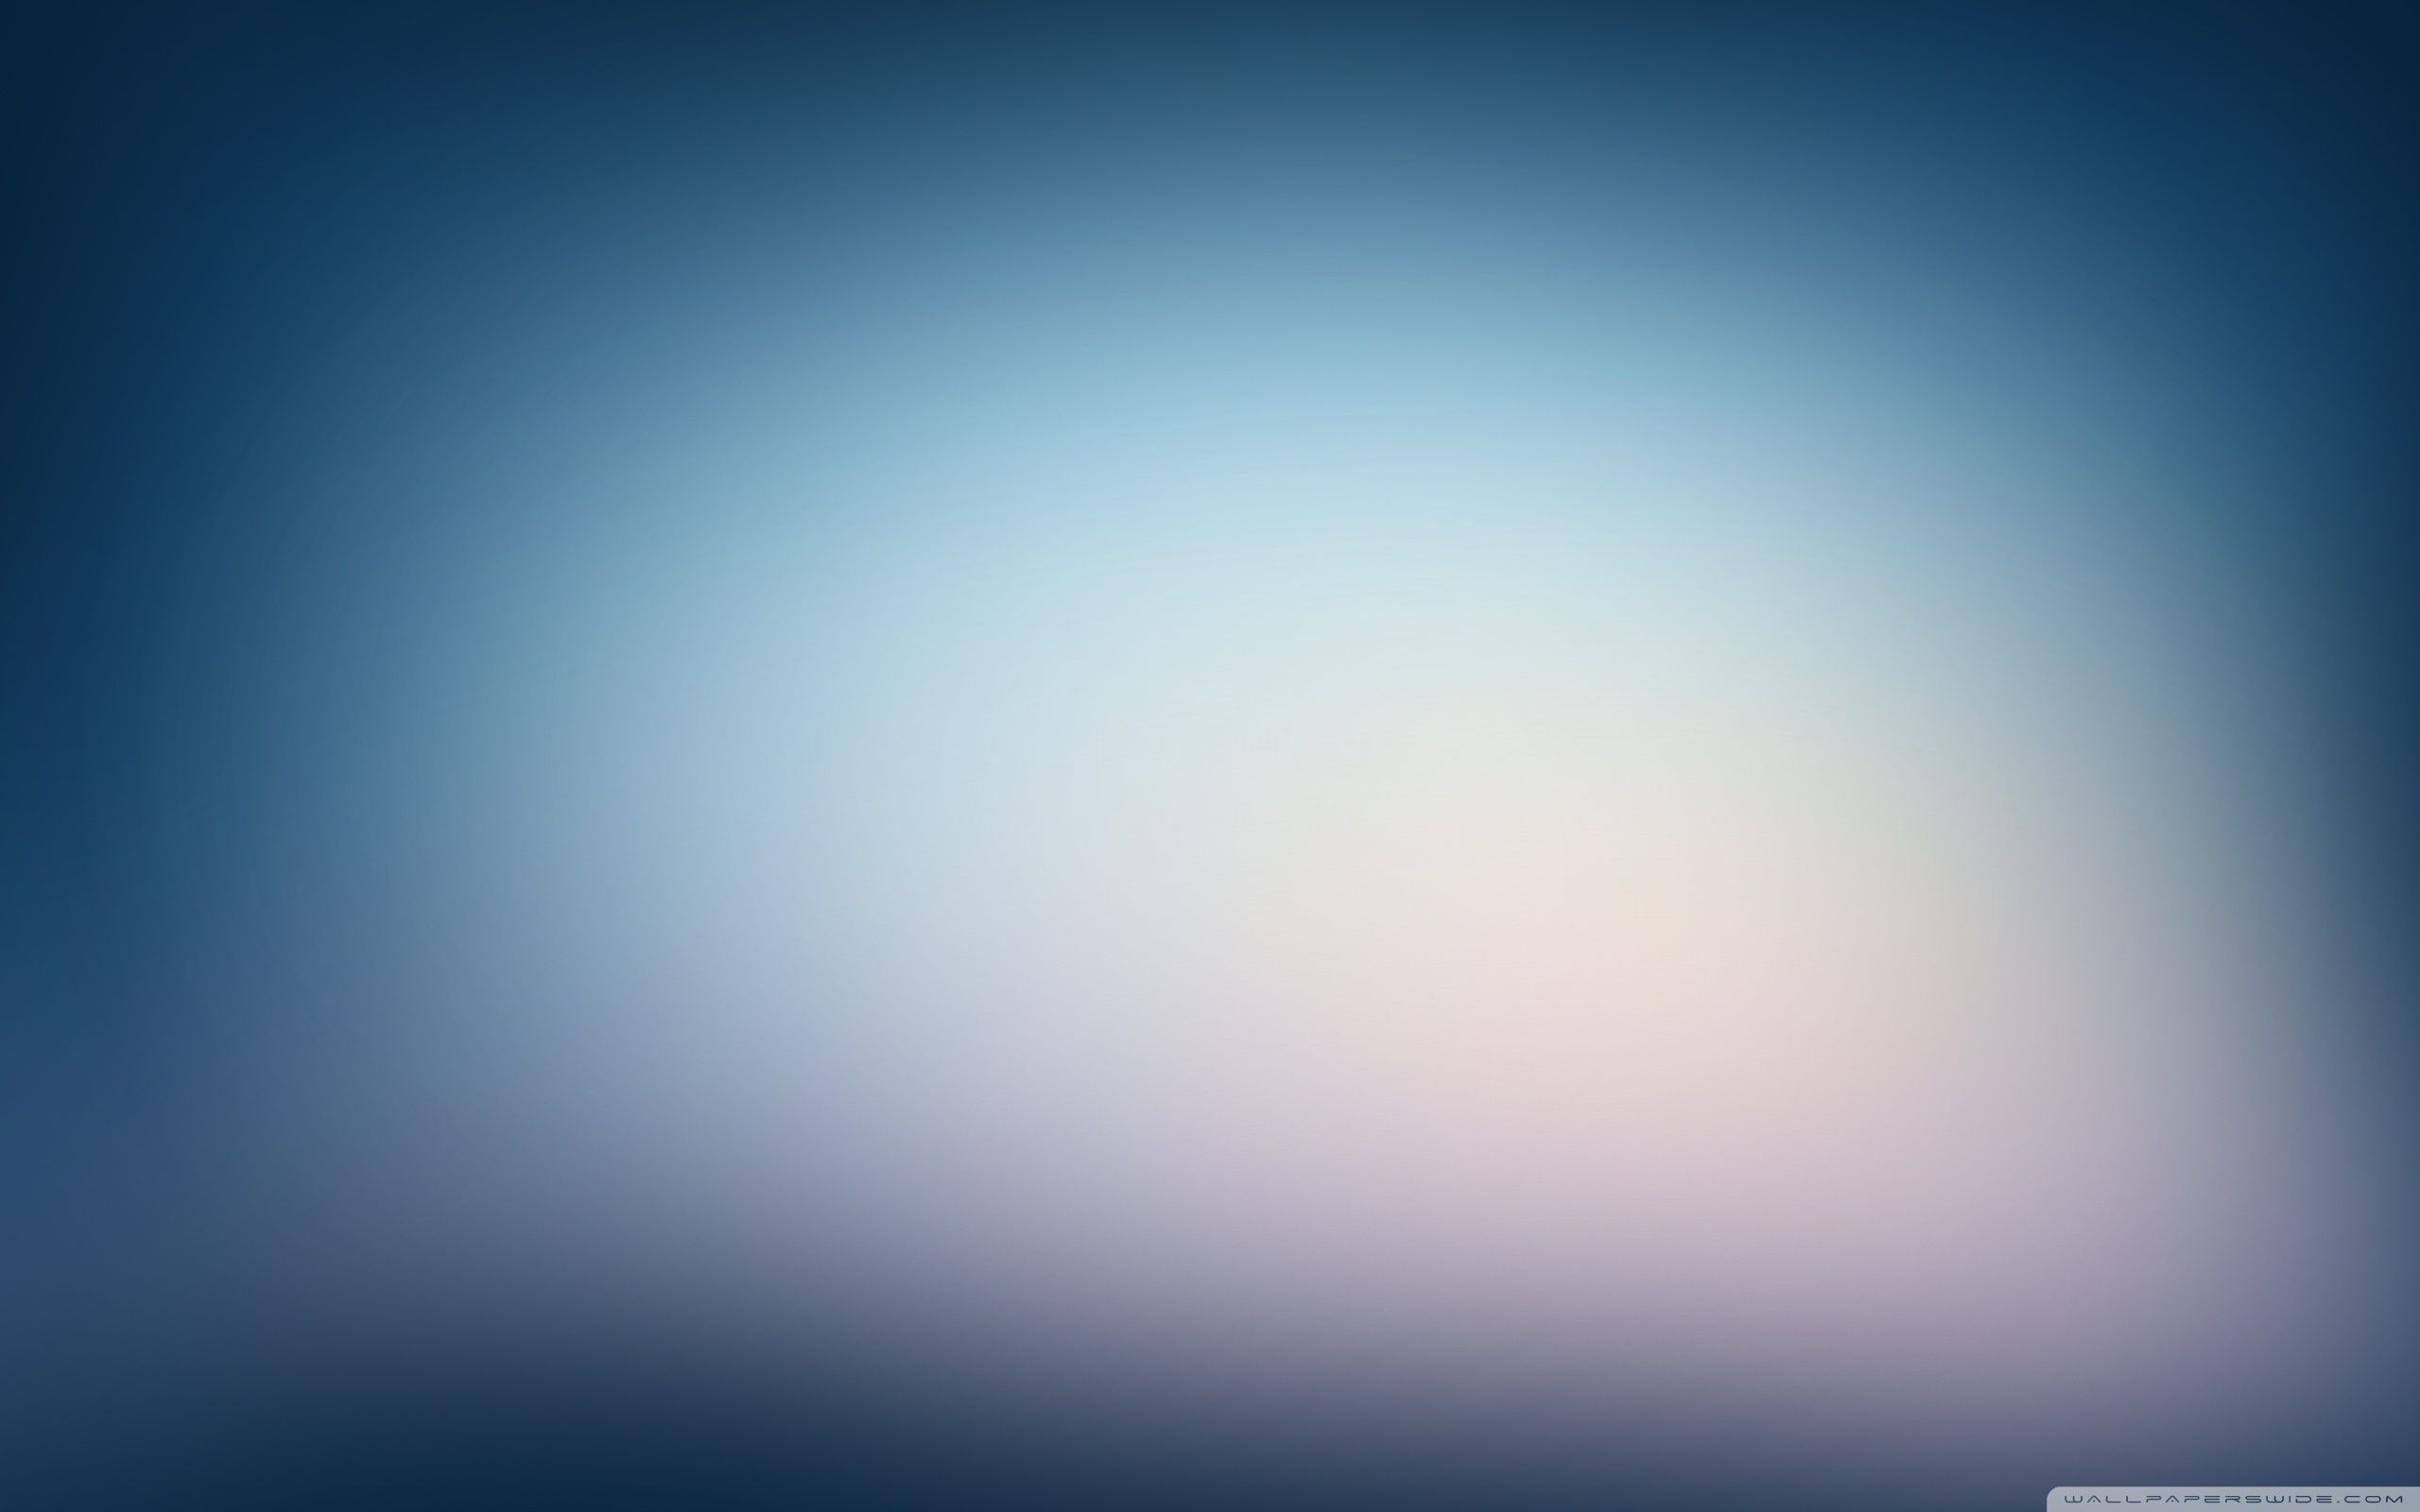 Gaussian Blur HD desktop wallpaper, High Definition, Fullscreen. Blue background wallpaper, Background image, Blue wallpaper